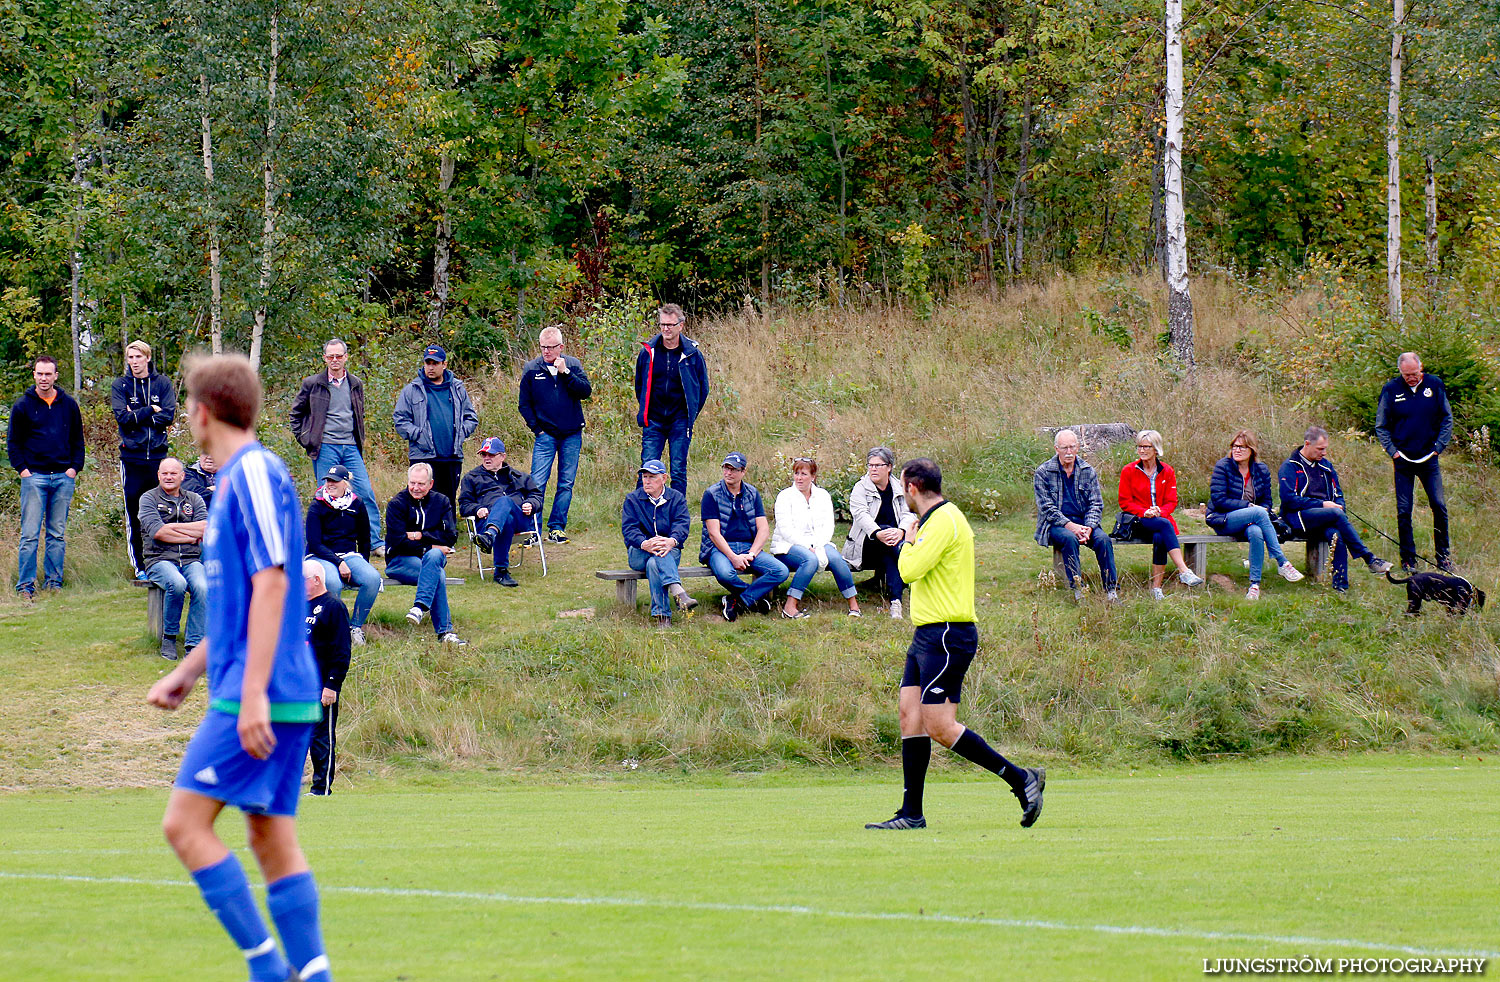 Lerdala IF-Örslösa-Söne IK 0-5,herr,Lerdala IP,Lerdala,Sverige,Fotboll,,2014,128879